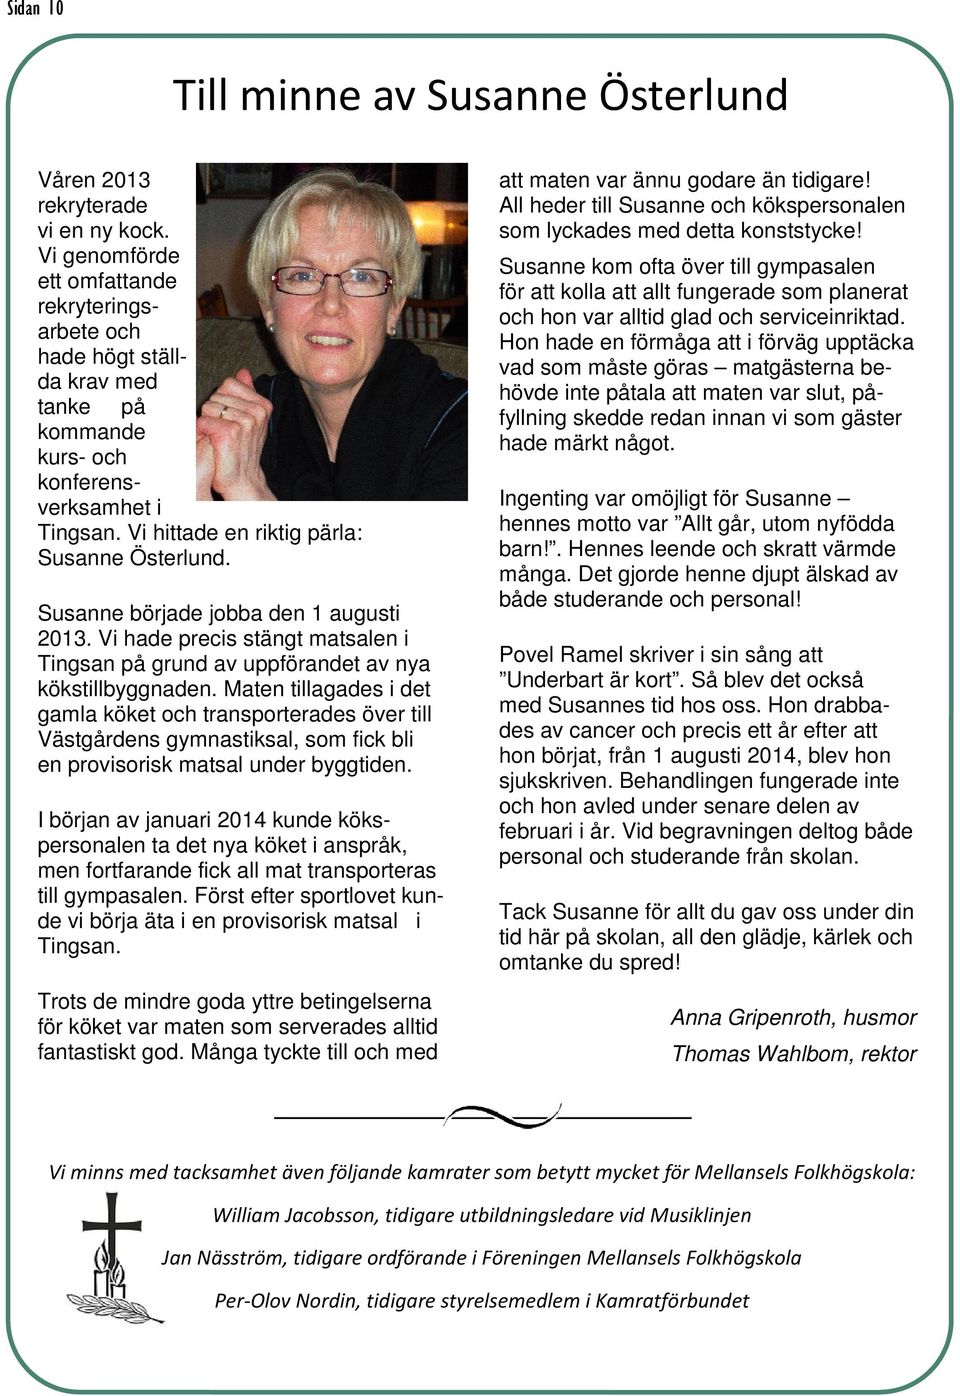 Susanne började jobba den 1 augusti 2013. Vi hade precis stängt matsalen i Tingsan på grund av uppförandet av nya kökstillbyggnaden.